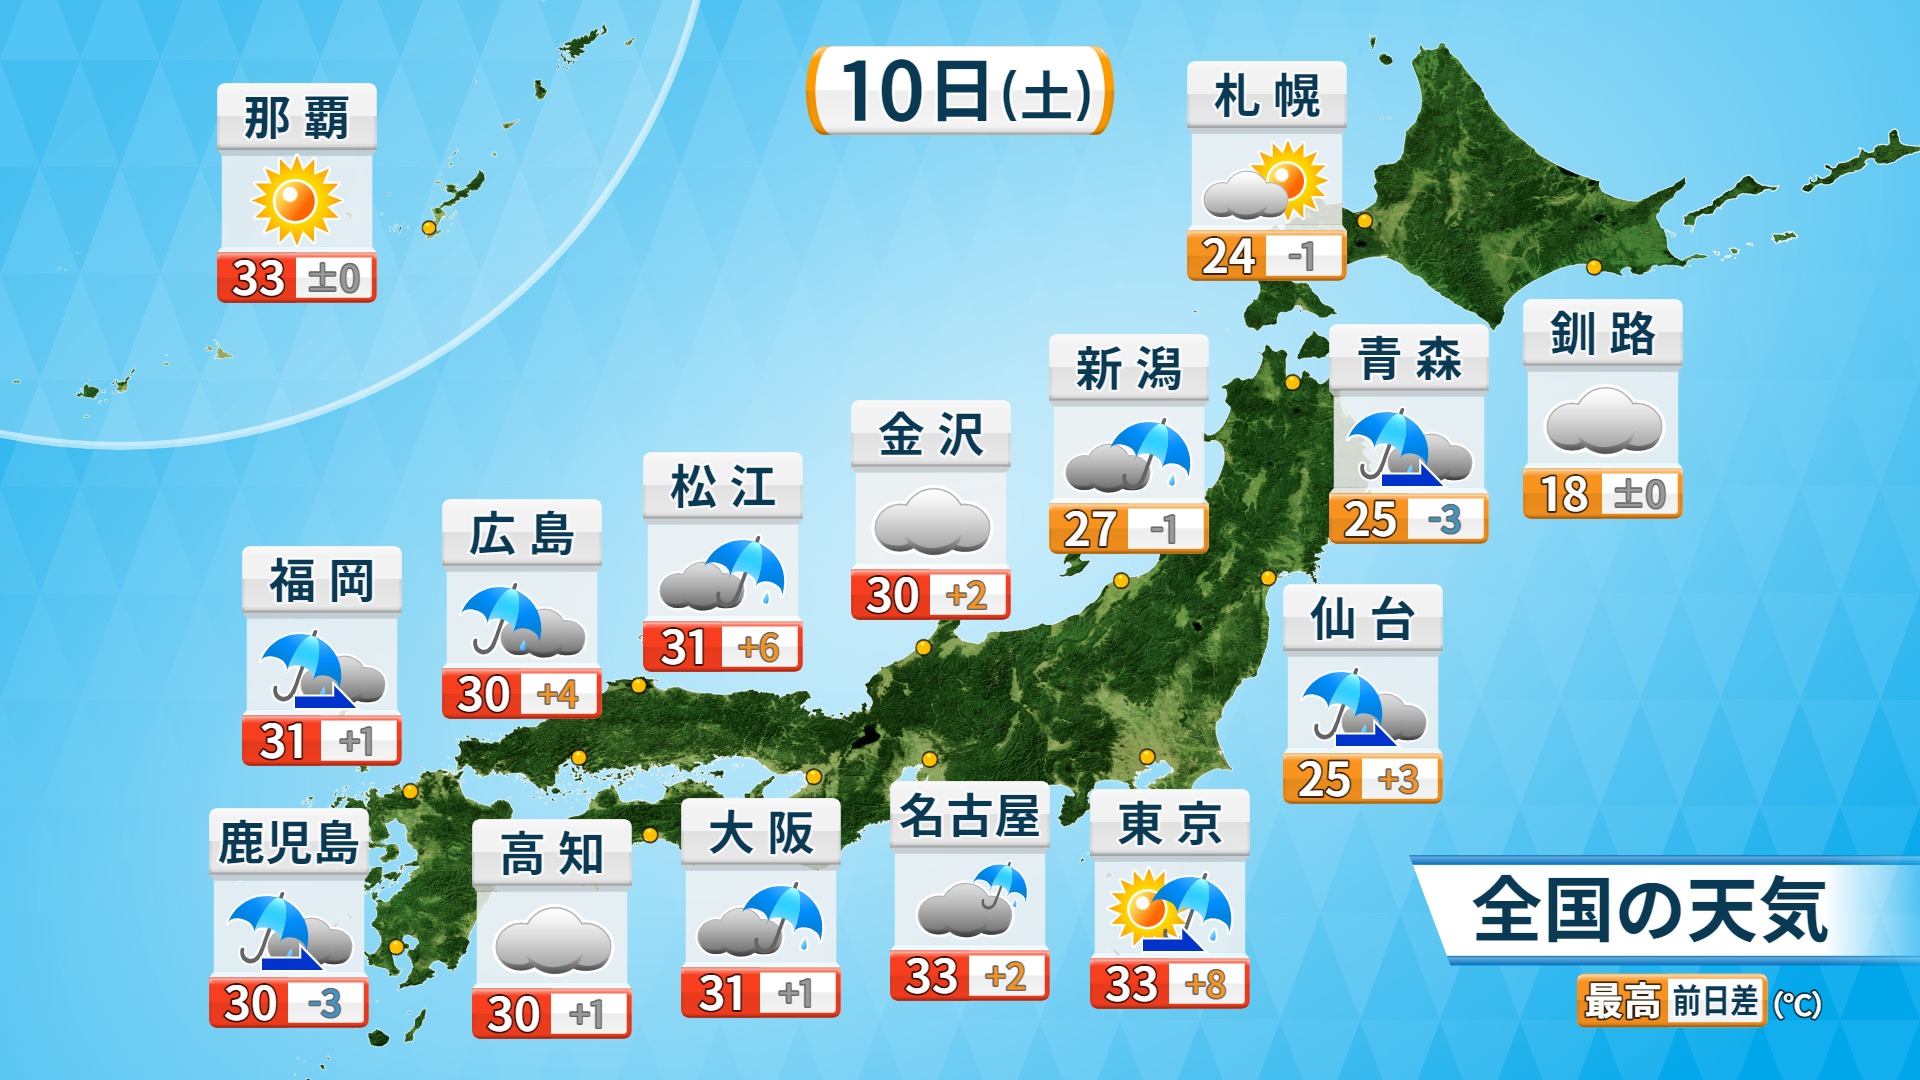 福岡良子official Site 天気のポイント 21年7月10日 土 九州に大雨特別警報